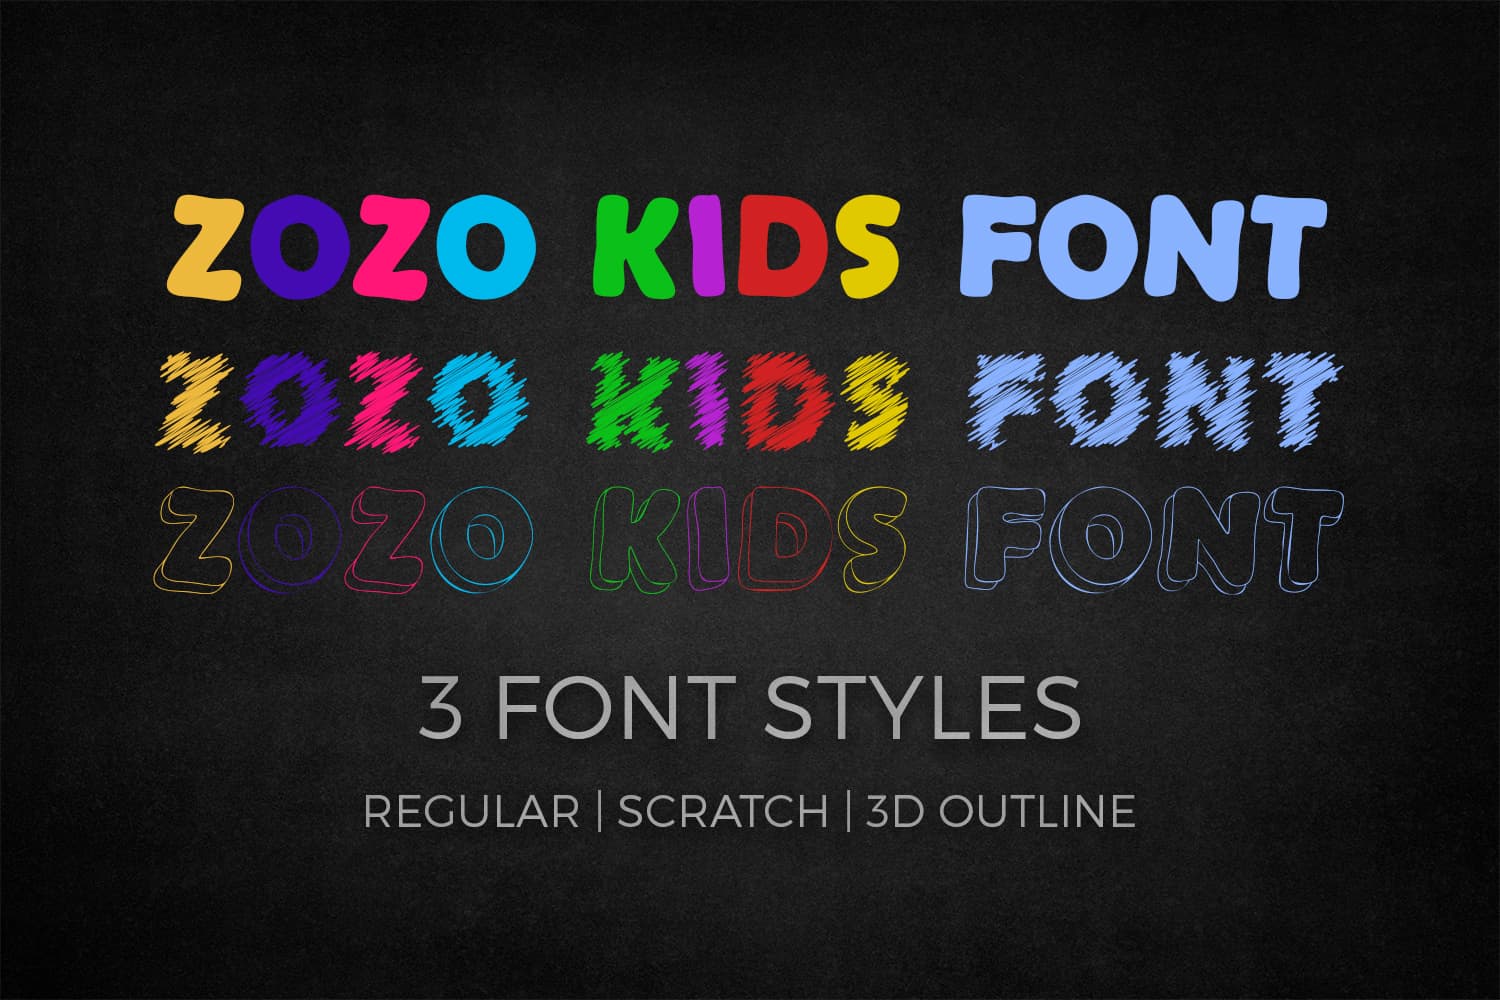 ZoZo Kids Font